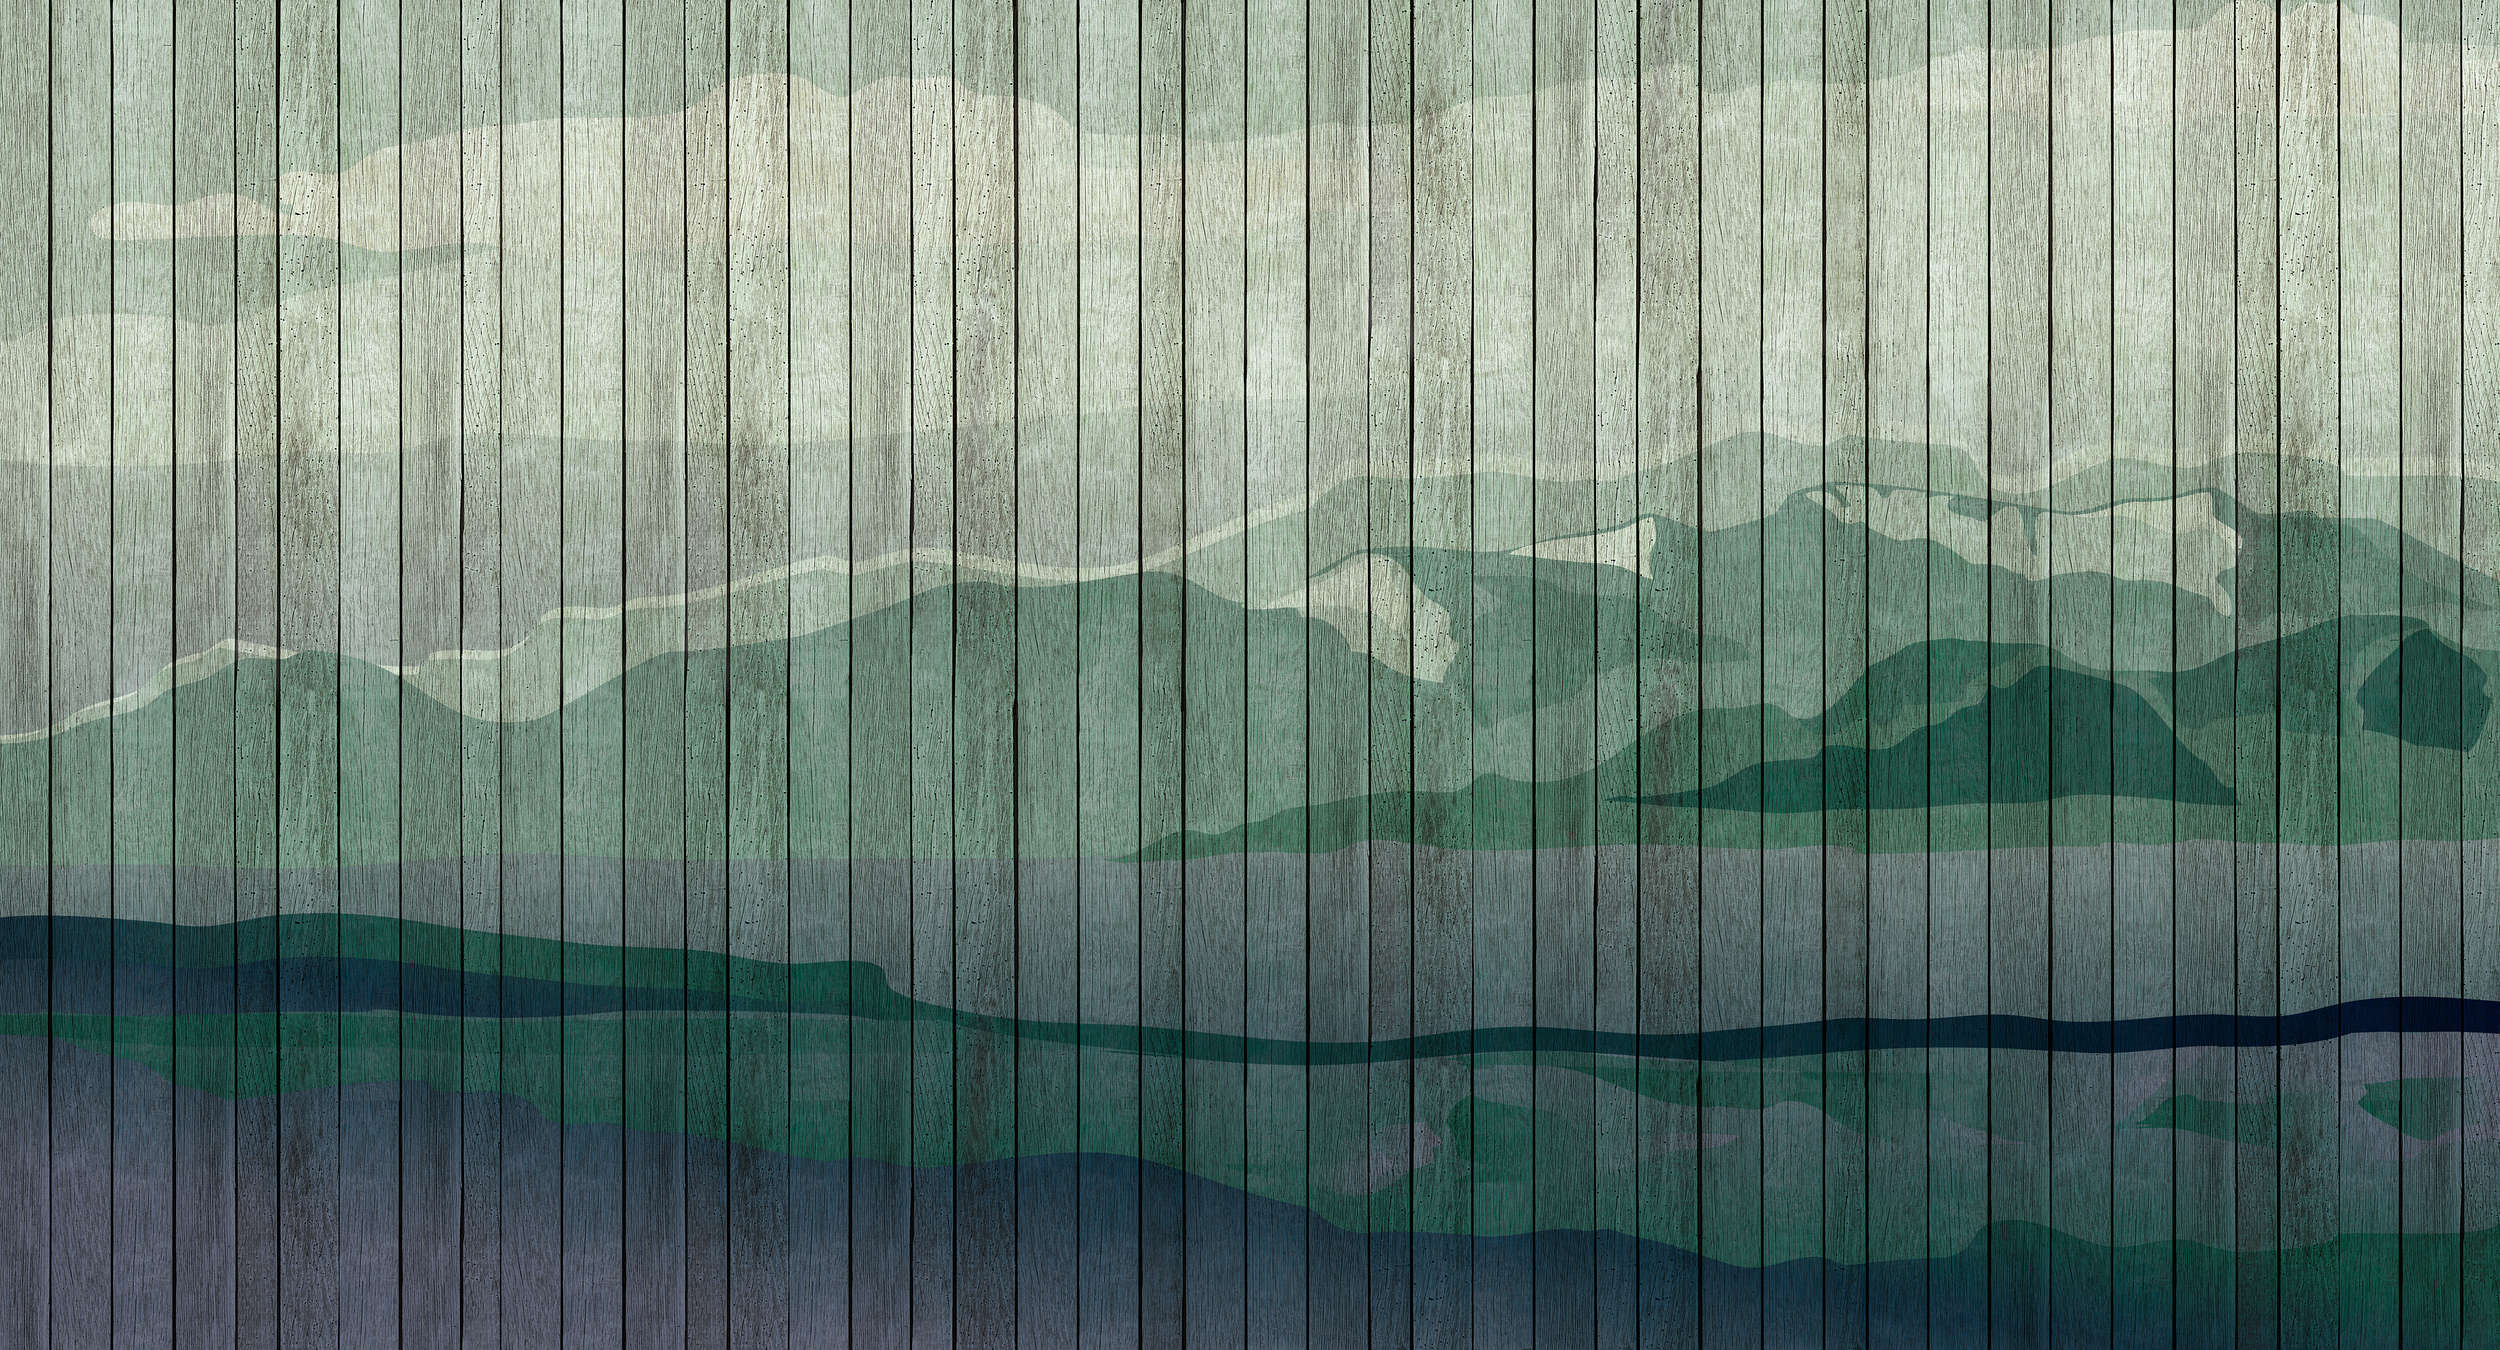             Mountains 3 - Modern Wallpaper Mountain Landscape & Board Optics - Blue, Green | Pearl Smooth Non-woven
        